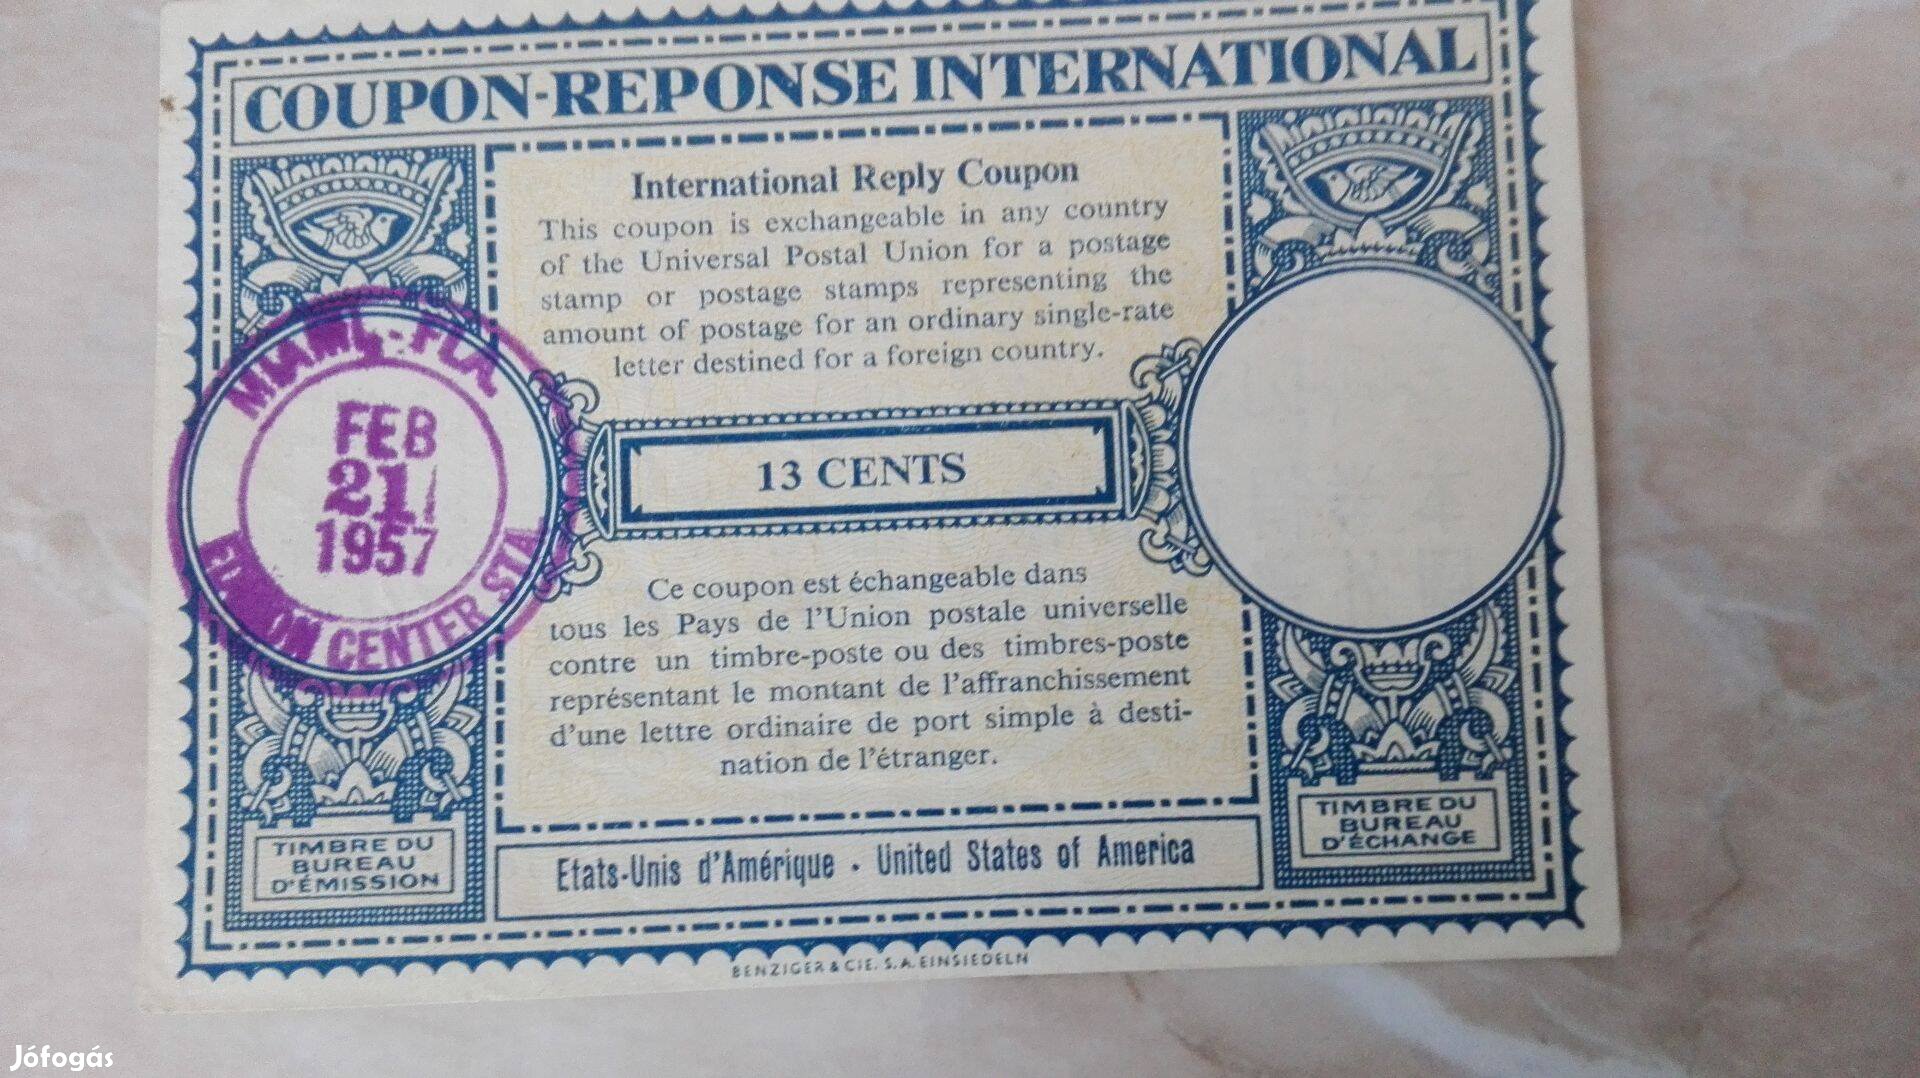 1957-es USA 13 cent Nemzetközi coupon jegy Ritka db